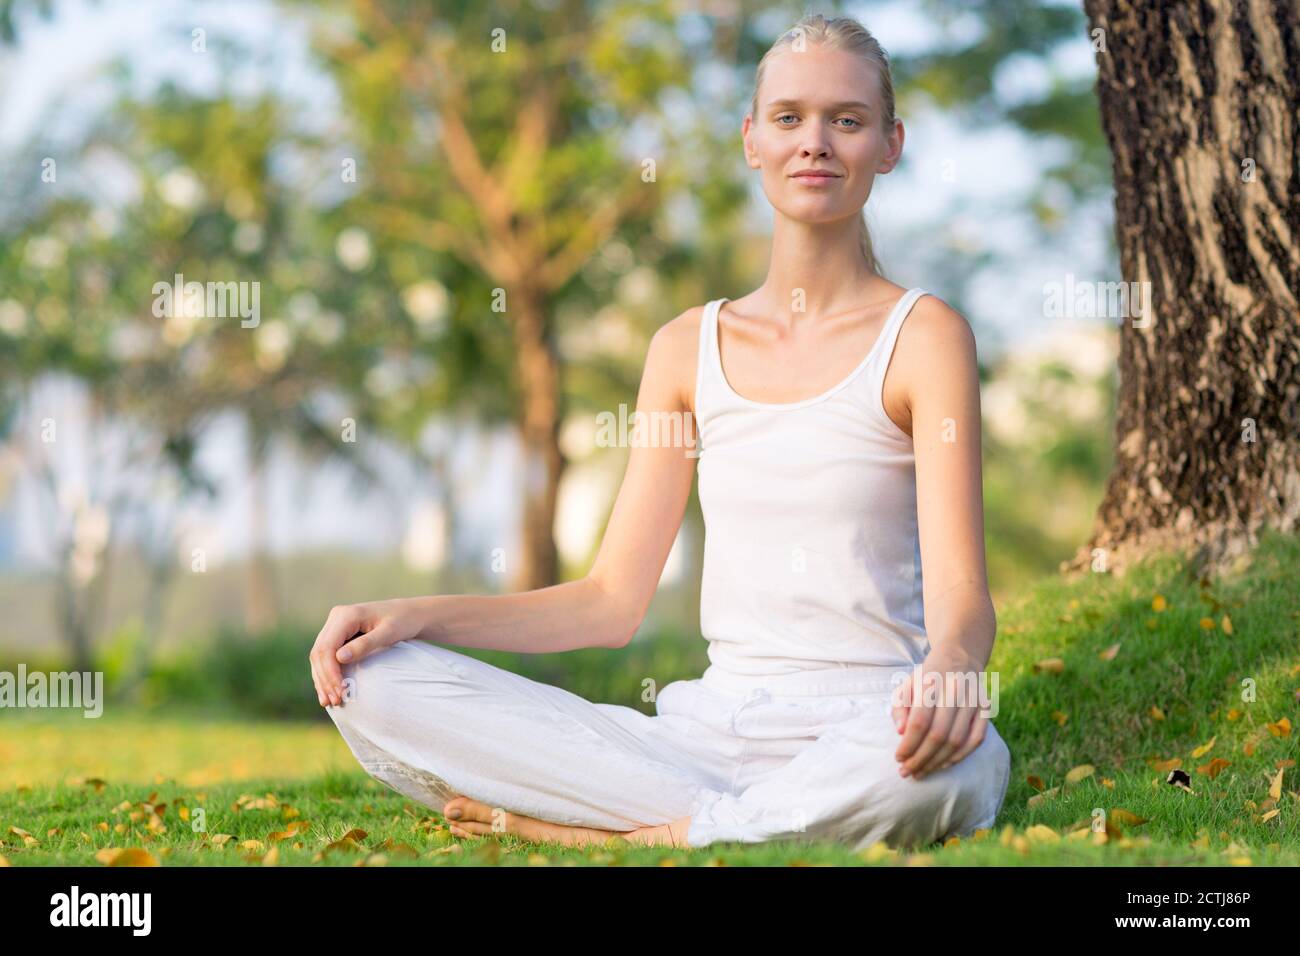 Schöne, ruhige Frau, die in einem ruhigen grünen Park sitzt, während sie zur Kamera lächelt. Wohlbefinden und Selbstversorgung. Stockfoto